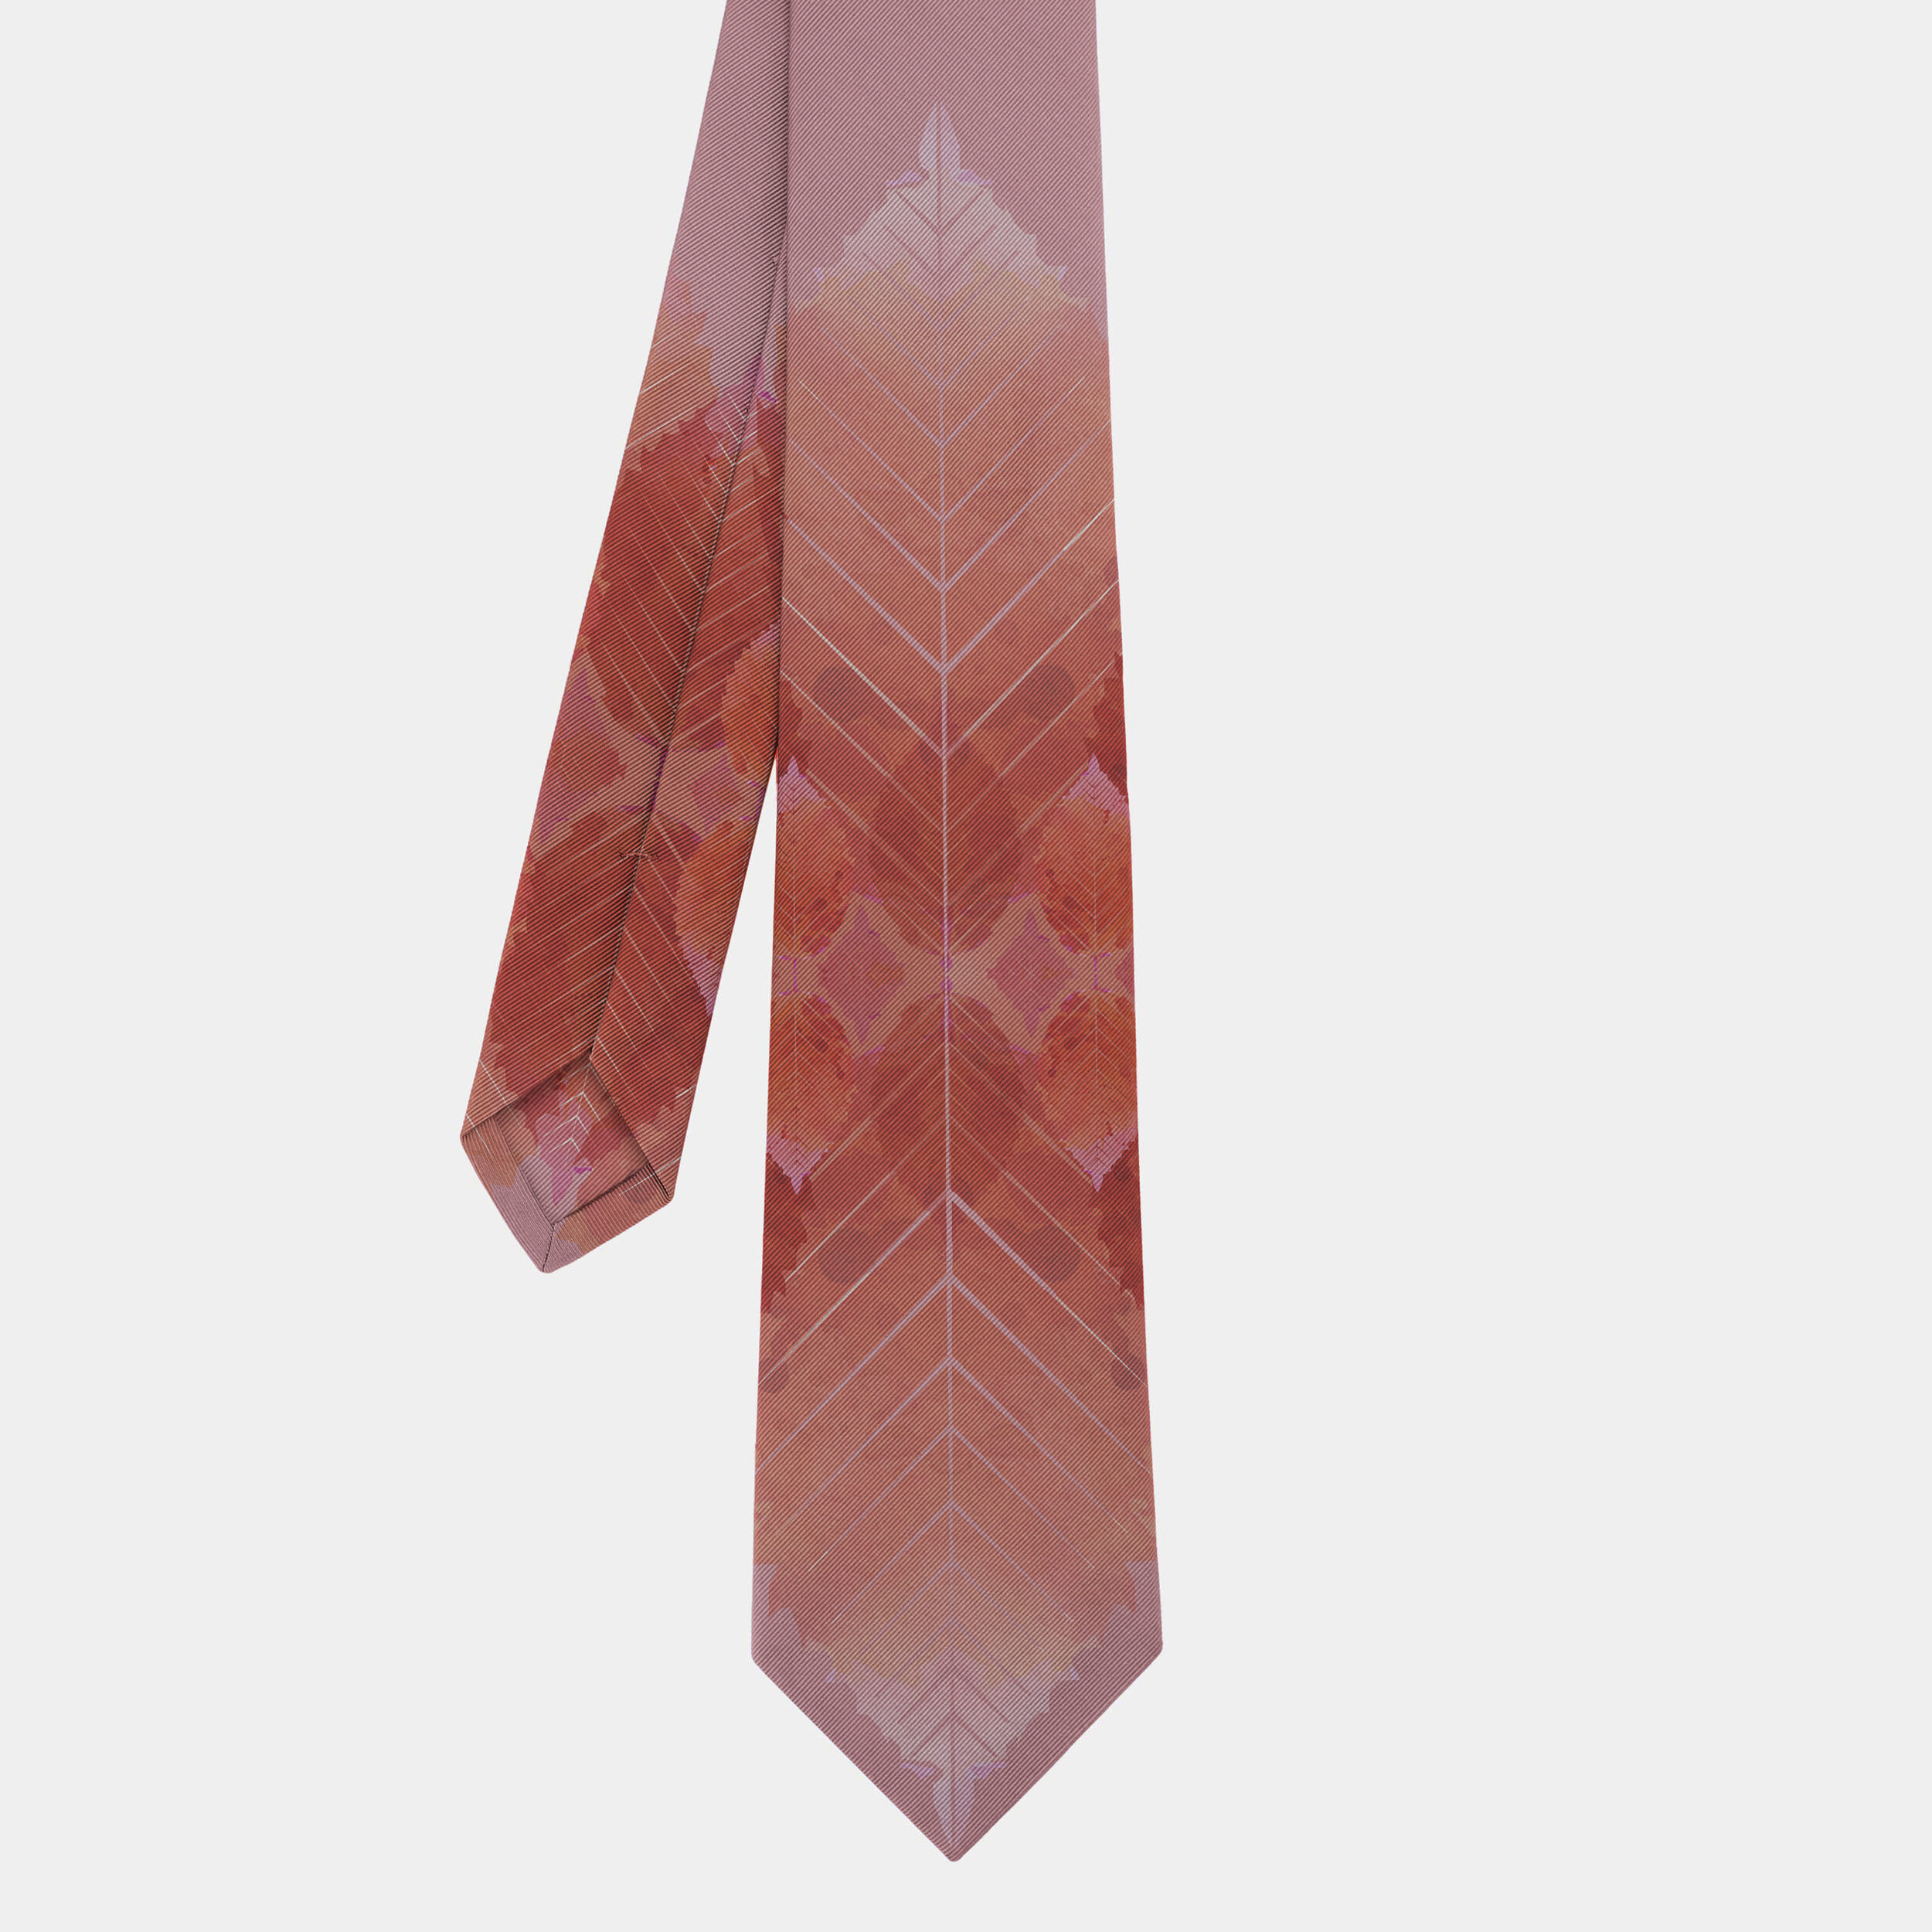 Blush Birch Tie.jpg